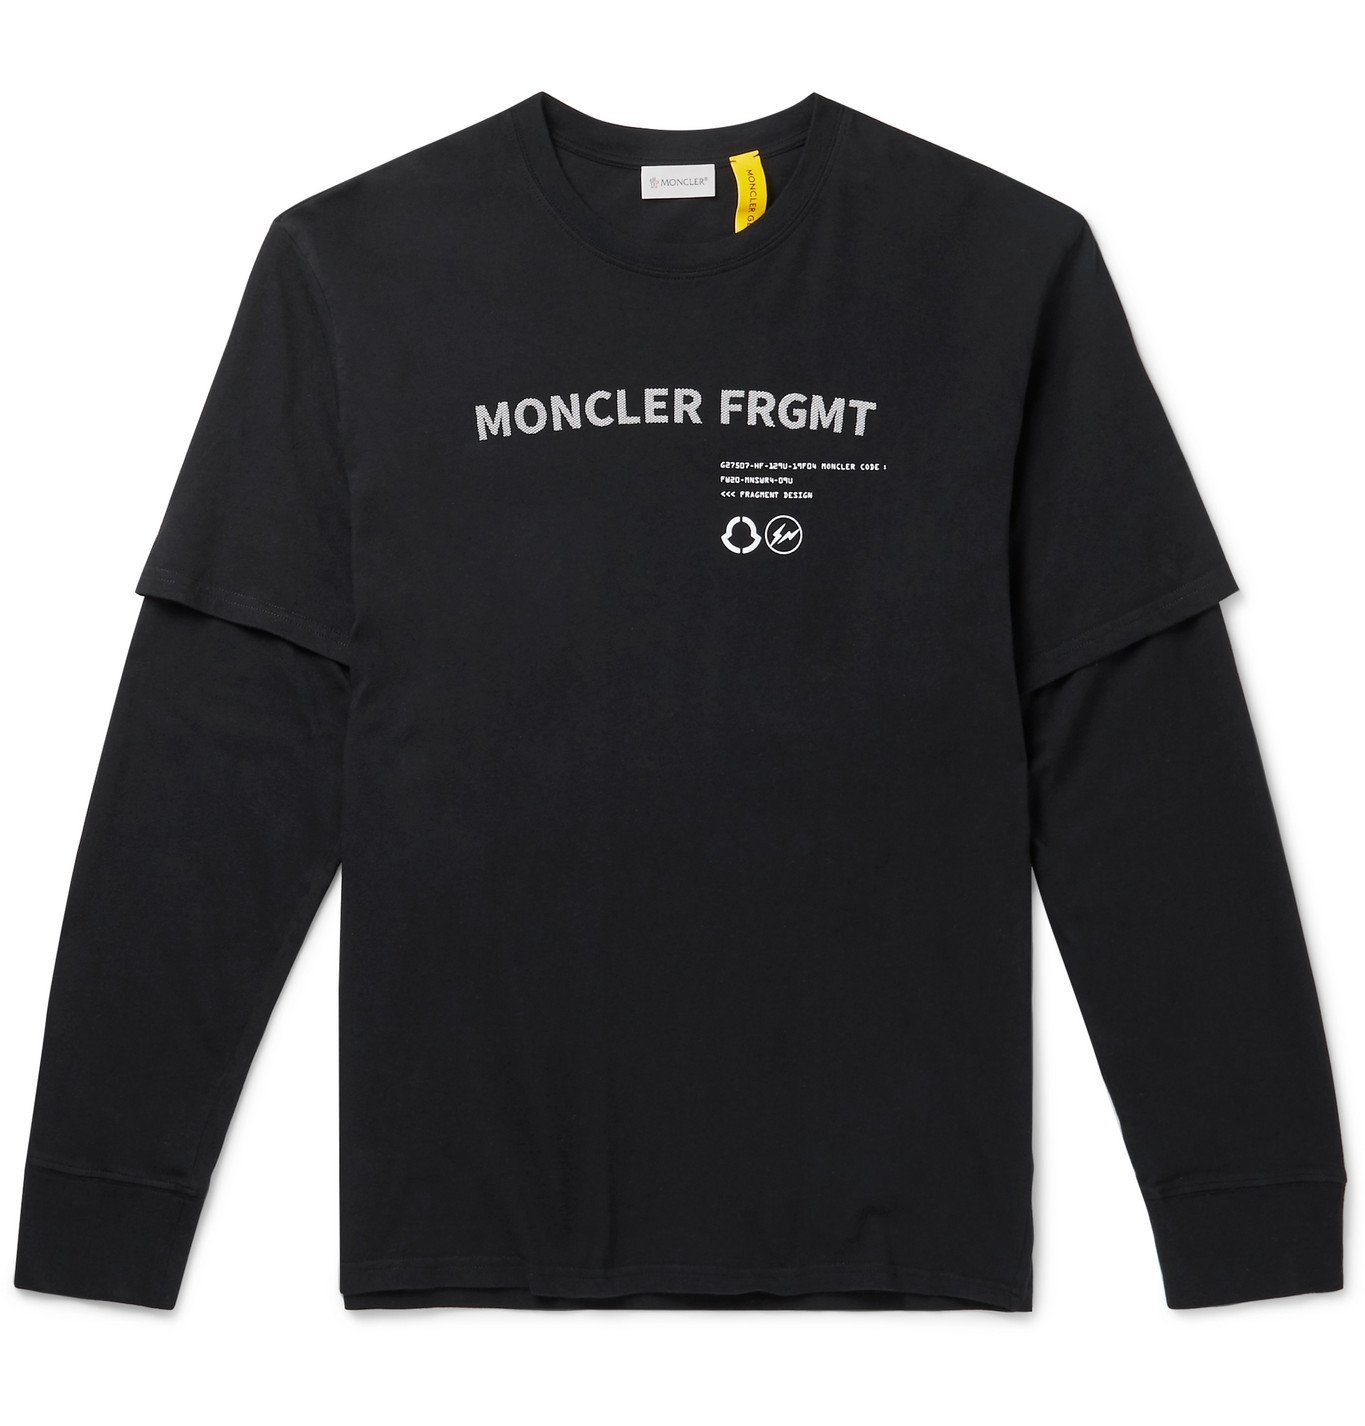 Moncler Genius 7 Moncler Fragment Hiroshi Fujiwara Layered Printed Cotton Jersey T Shirt 5404